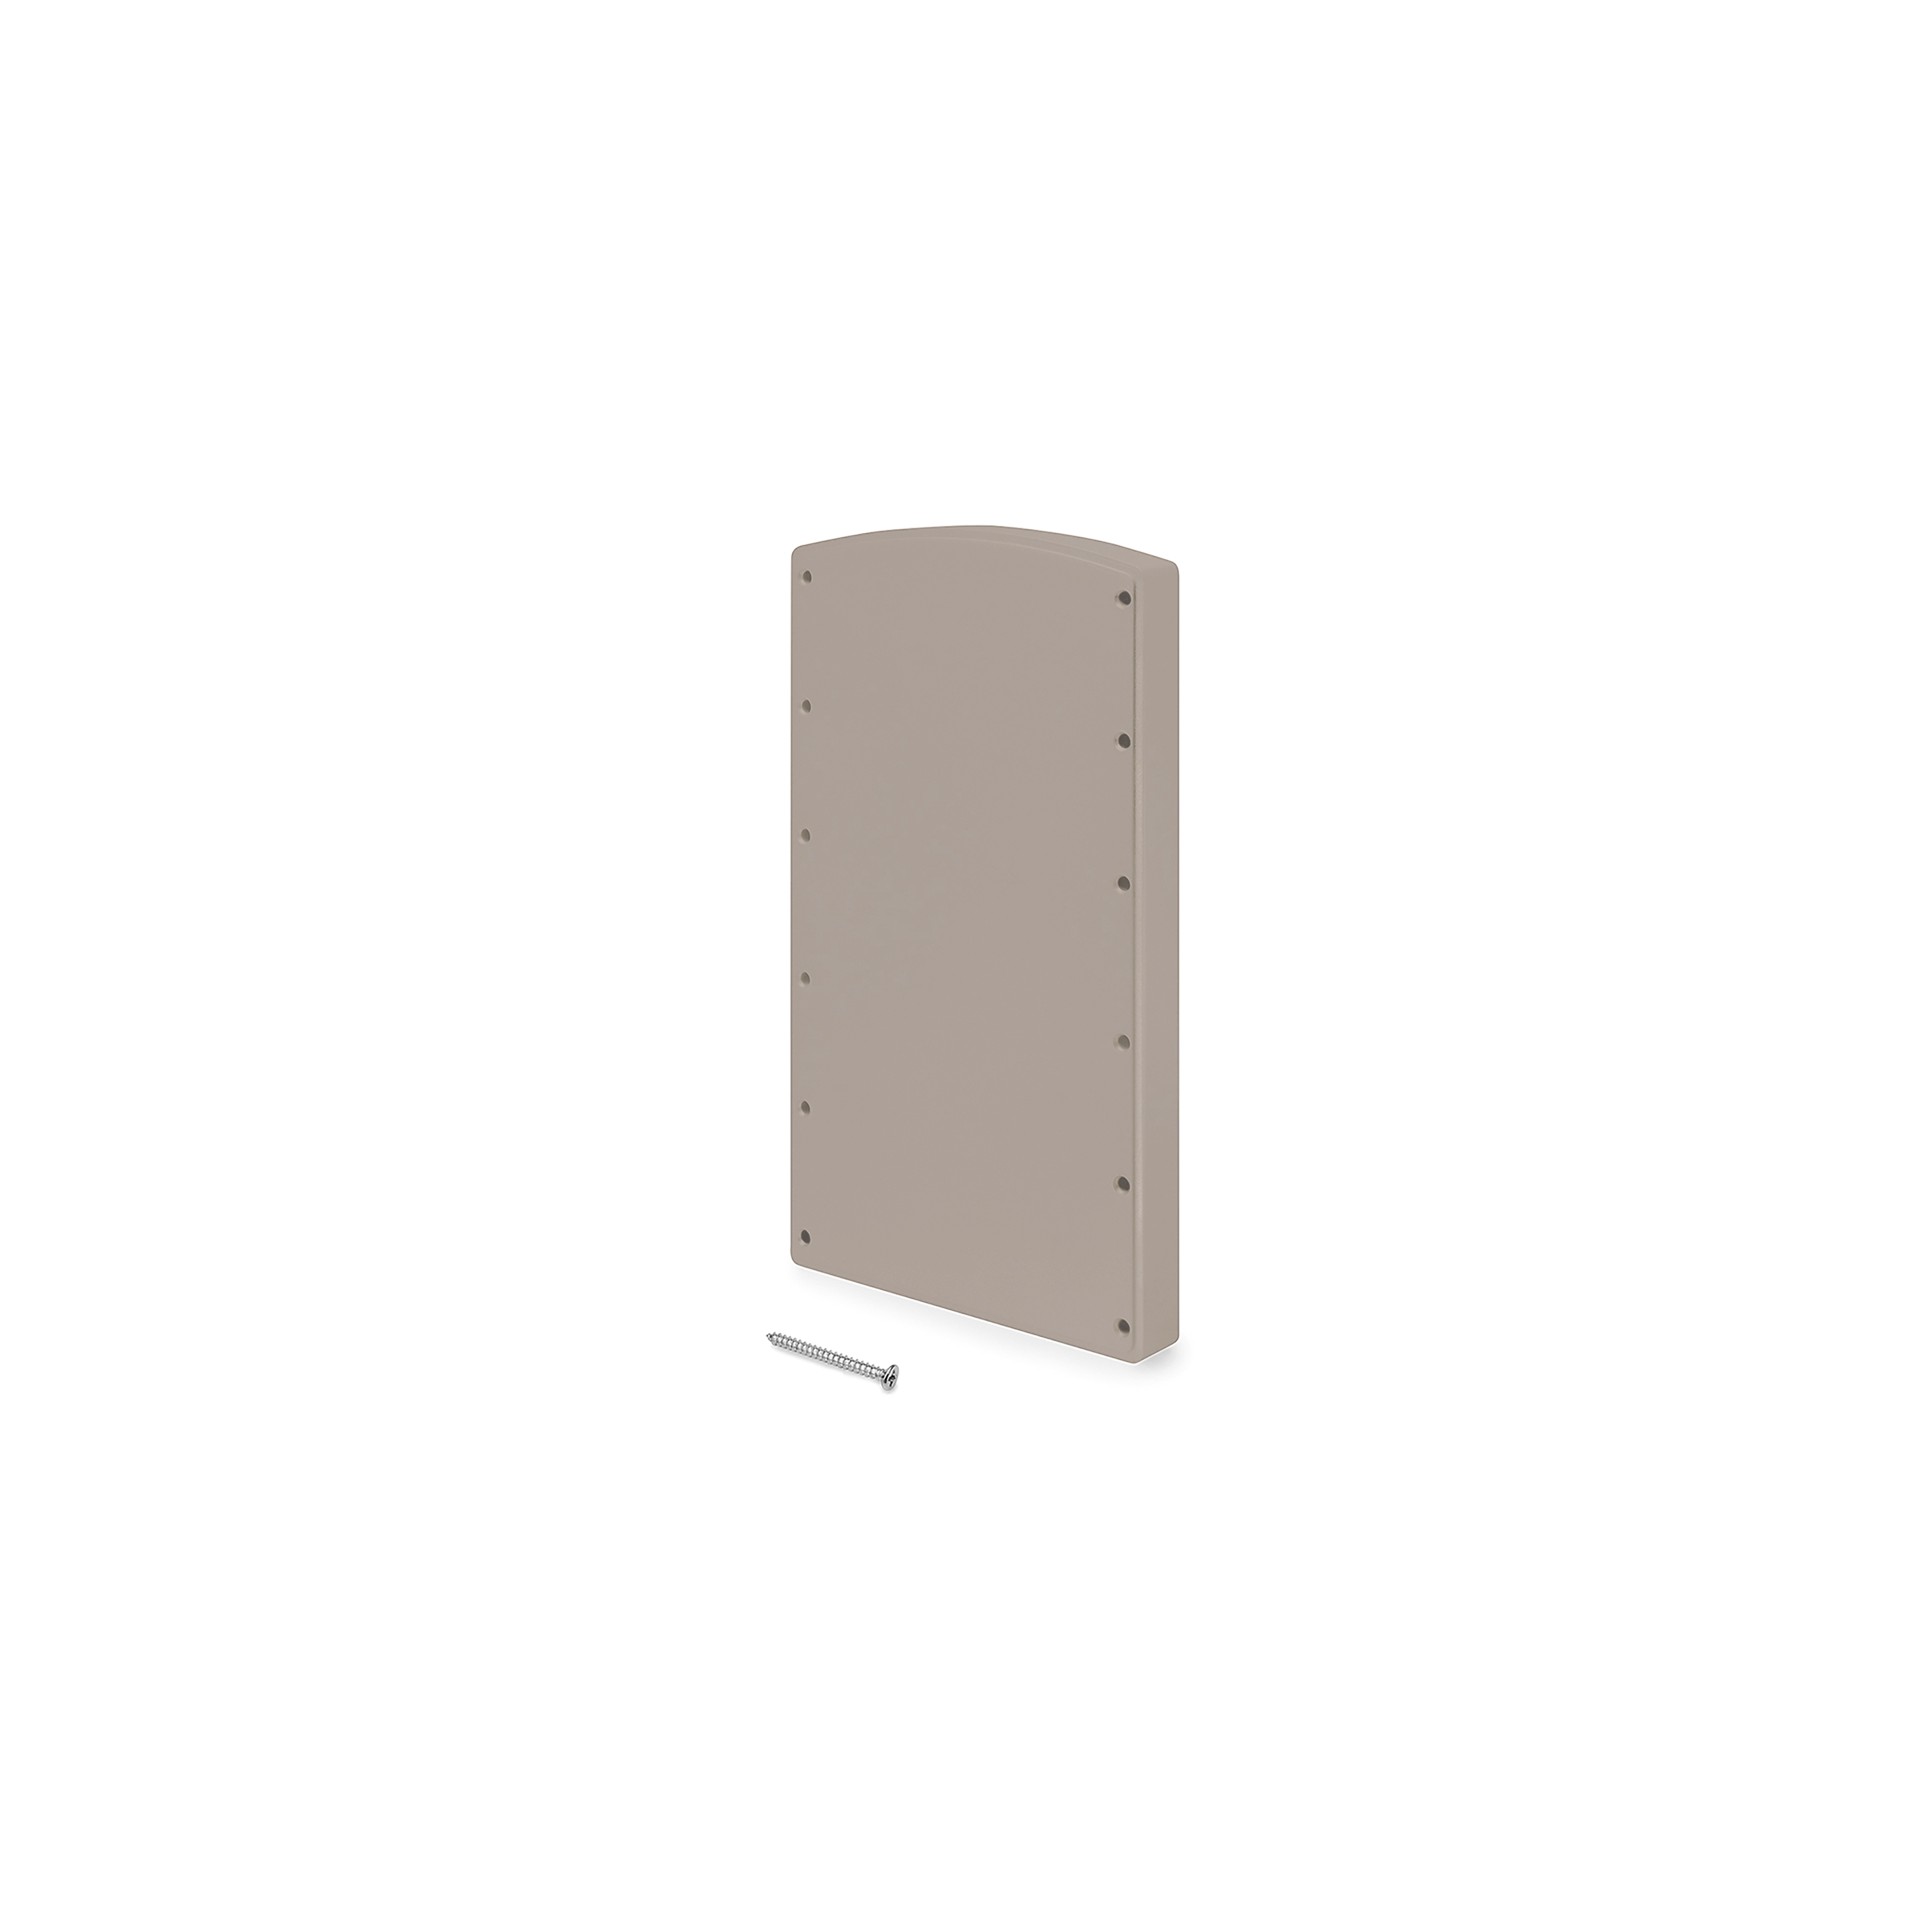  Accessoire lateral pour penderie rabattable pour armoire Hang, Peint gris pierre, Plastique